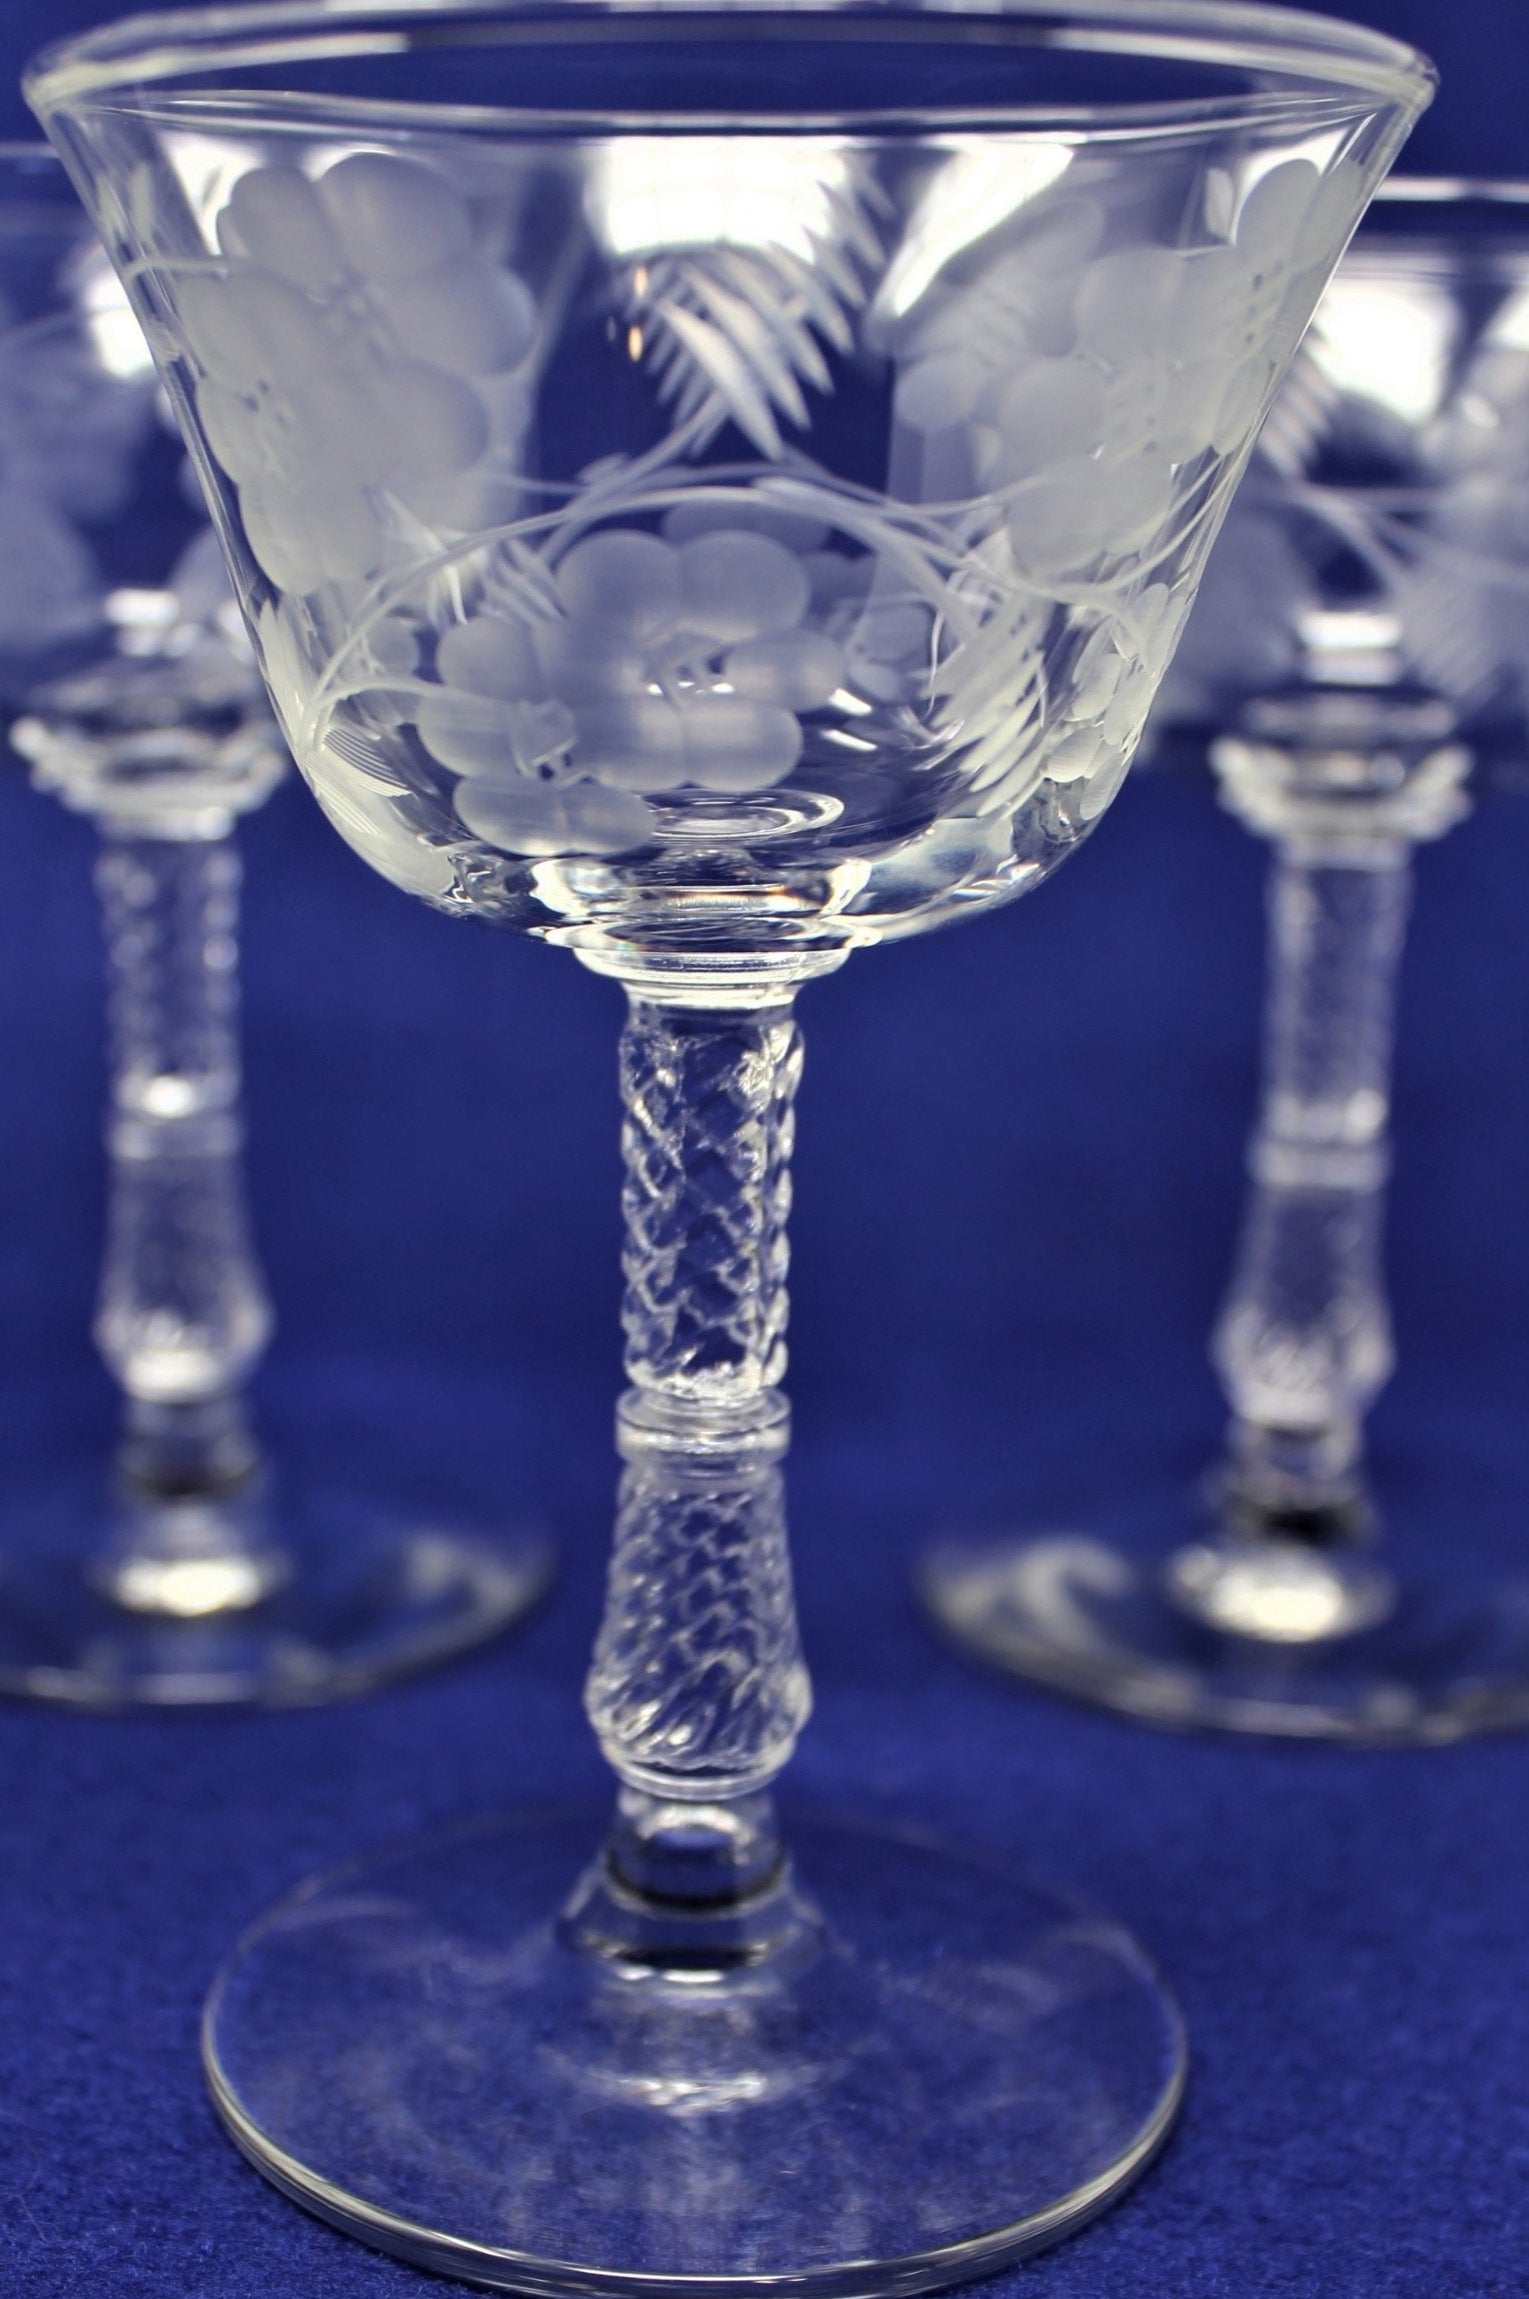 4 Vintage Etched CRYSTAL Wine Glasses, Rock Sharpe, 1950's, After